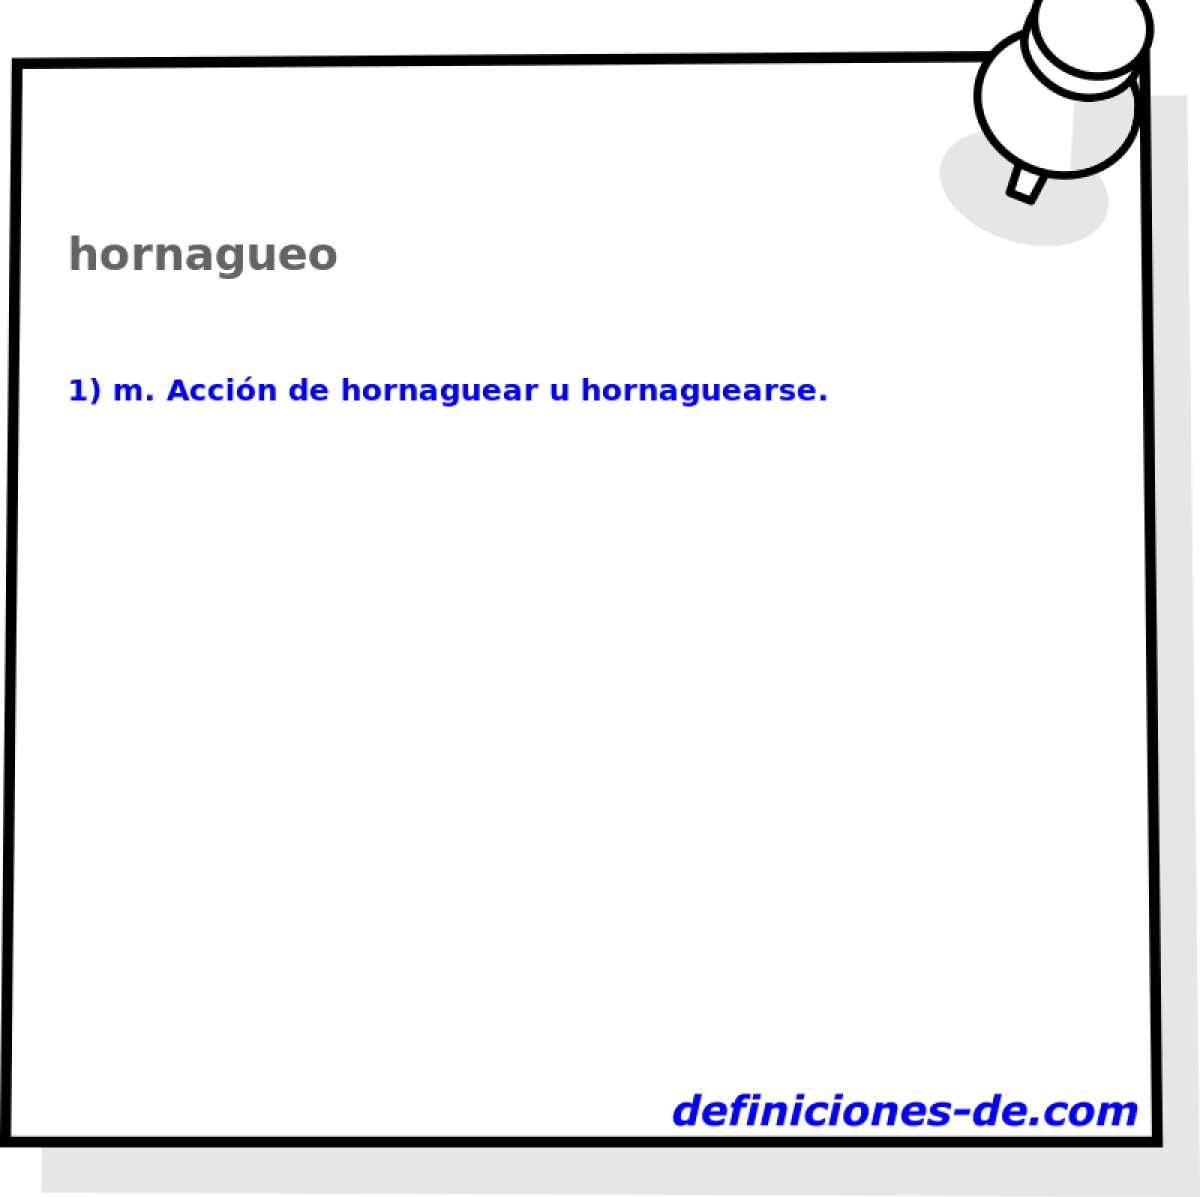 hornagueo 